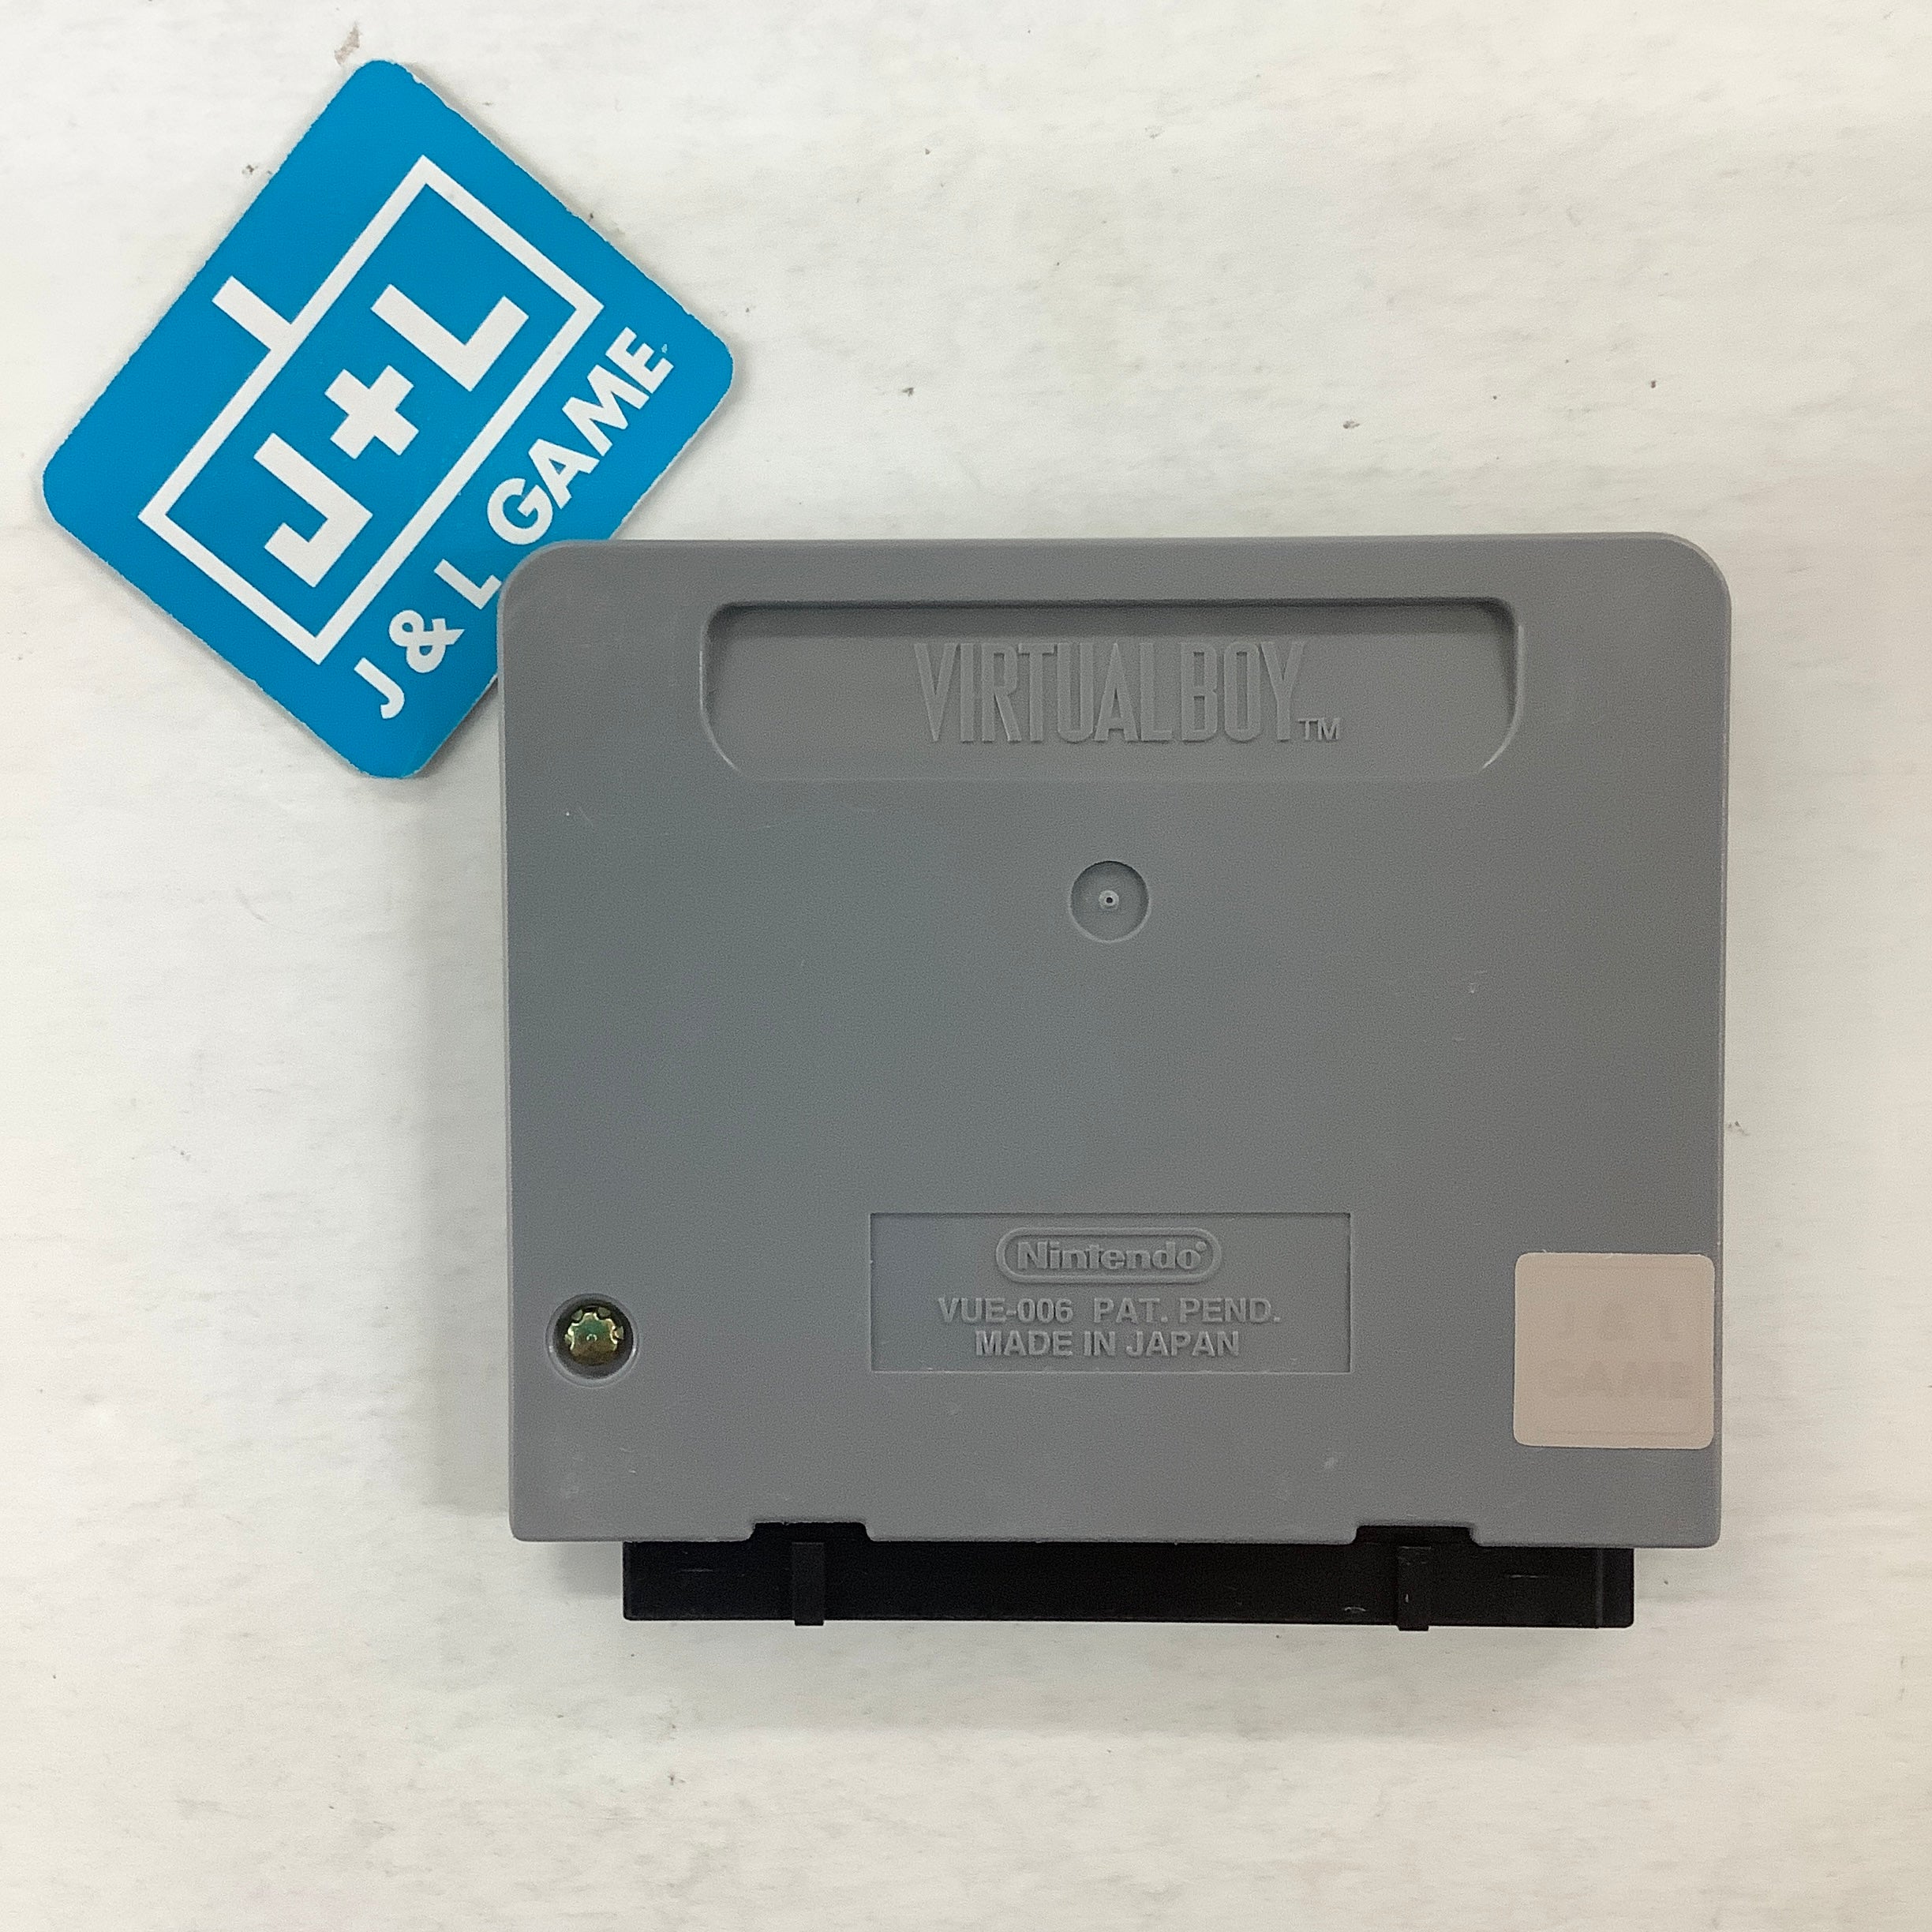 Teleroboxer - Virtual Boy [Pre-Owned] Video Games Nintendo   